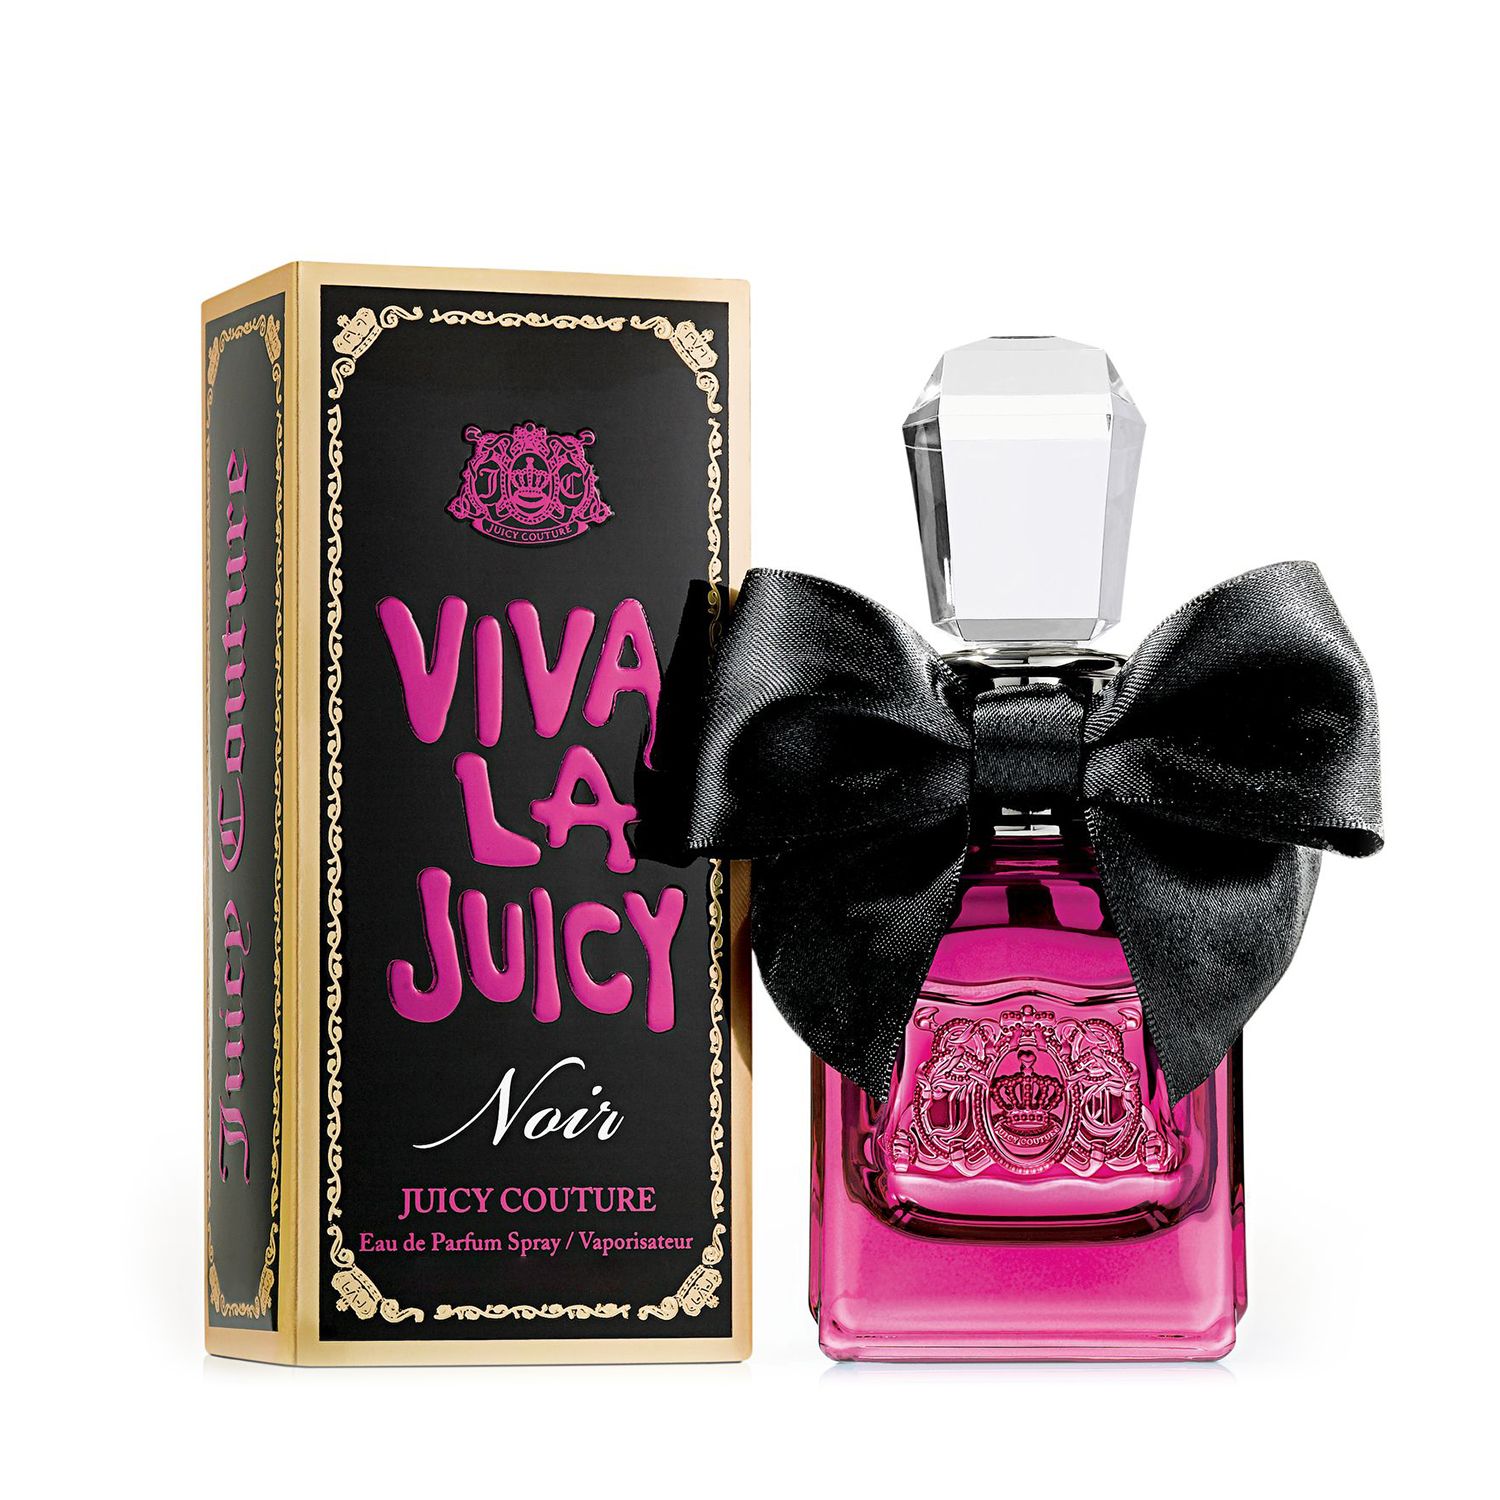 viva la juicy best perfume